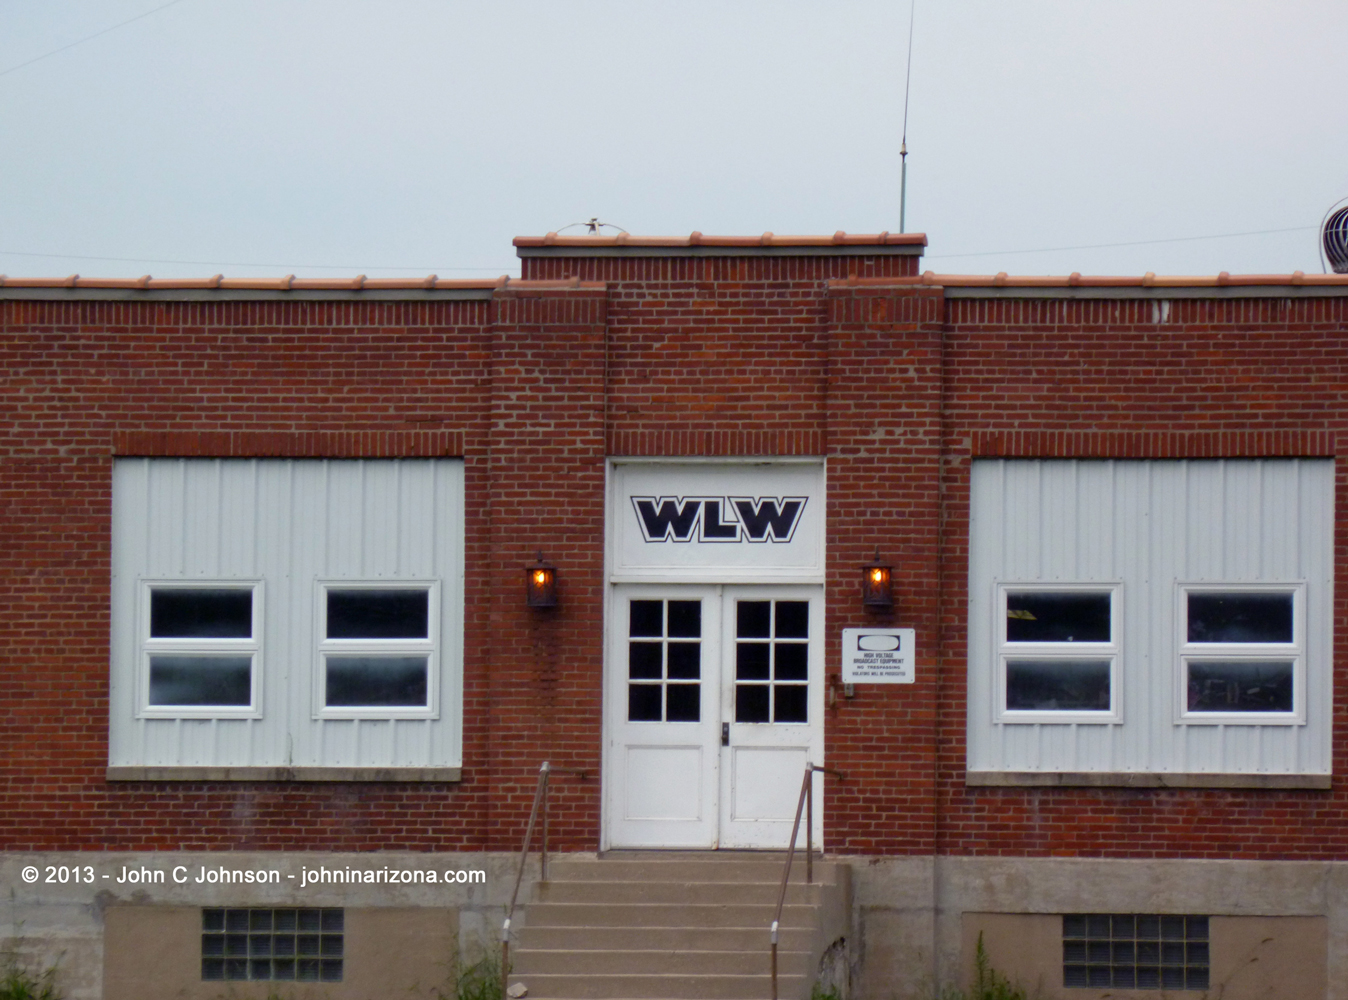 WLW Radio 700 Cincinnati, Ohio